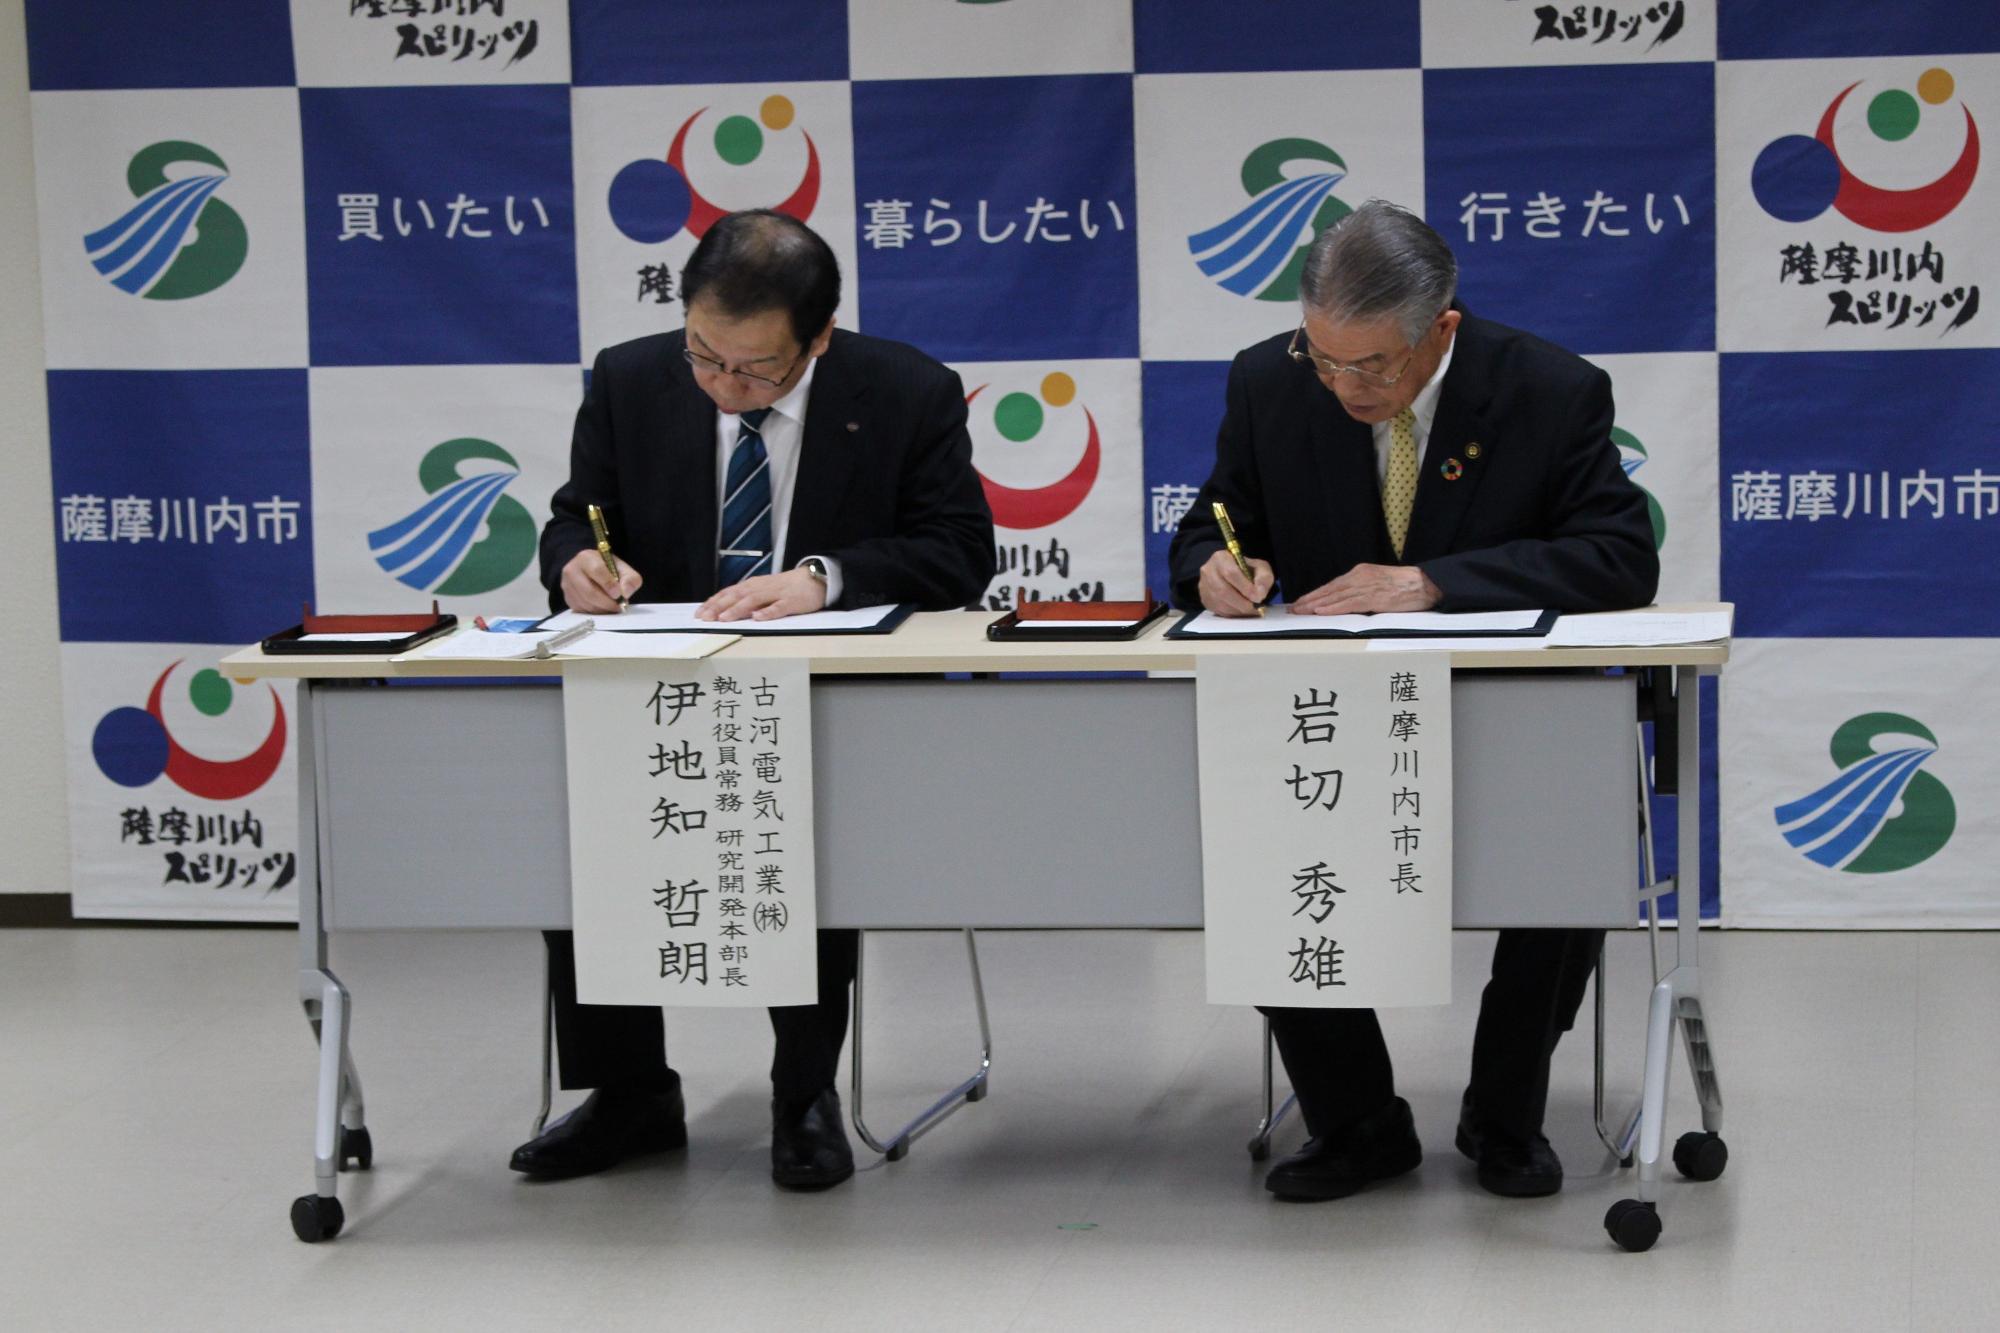 スーツ姿の男性二人が同じ机に並んで書類にサインしている写真